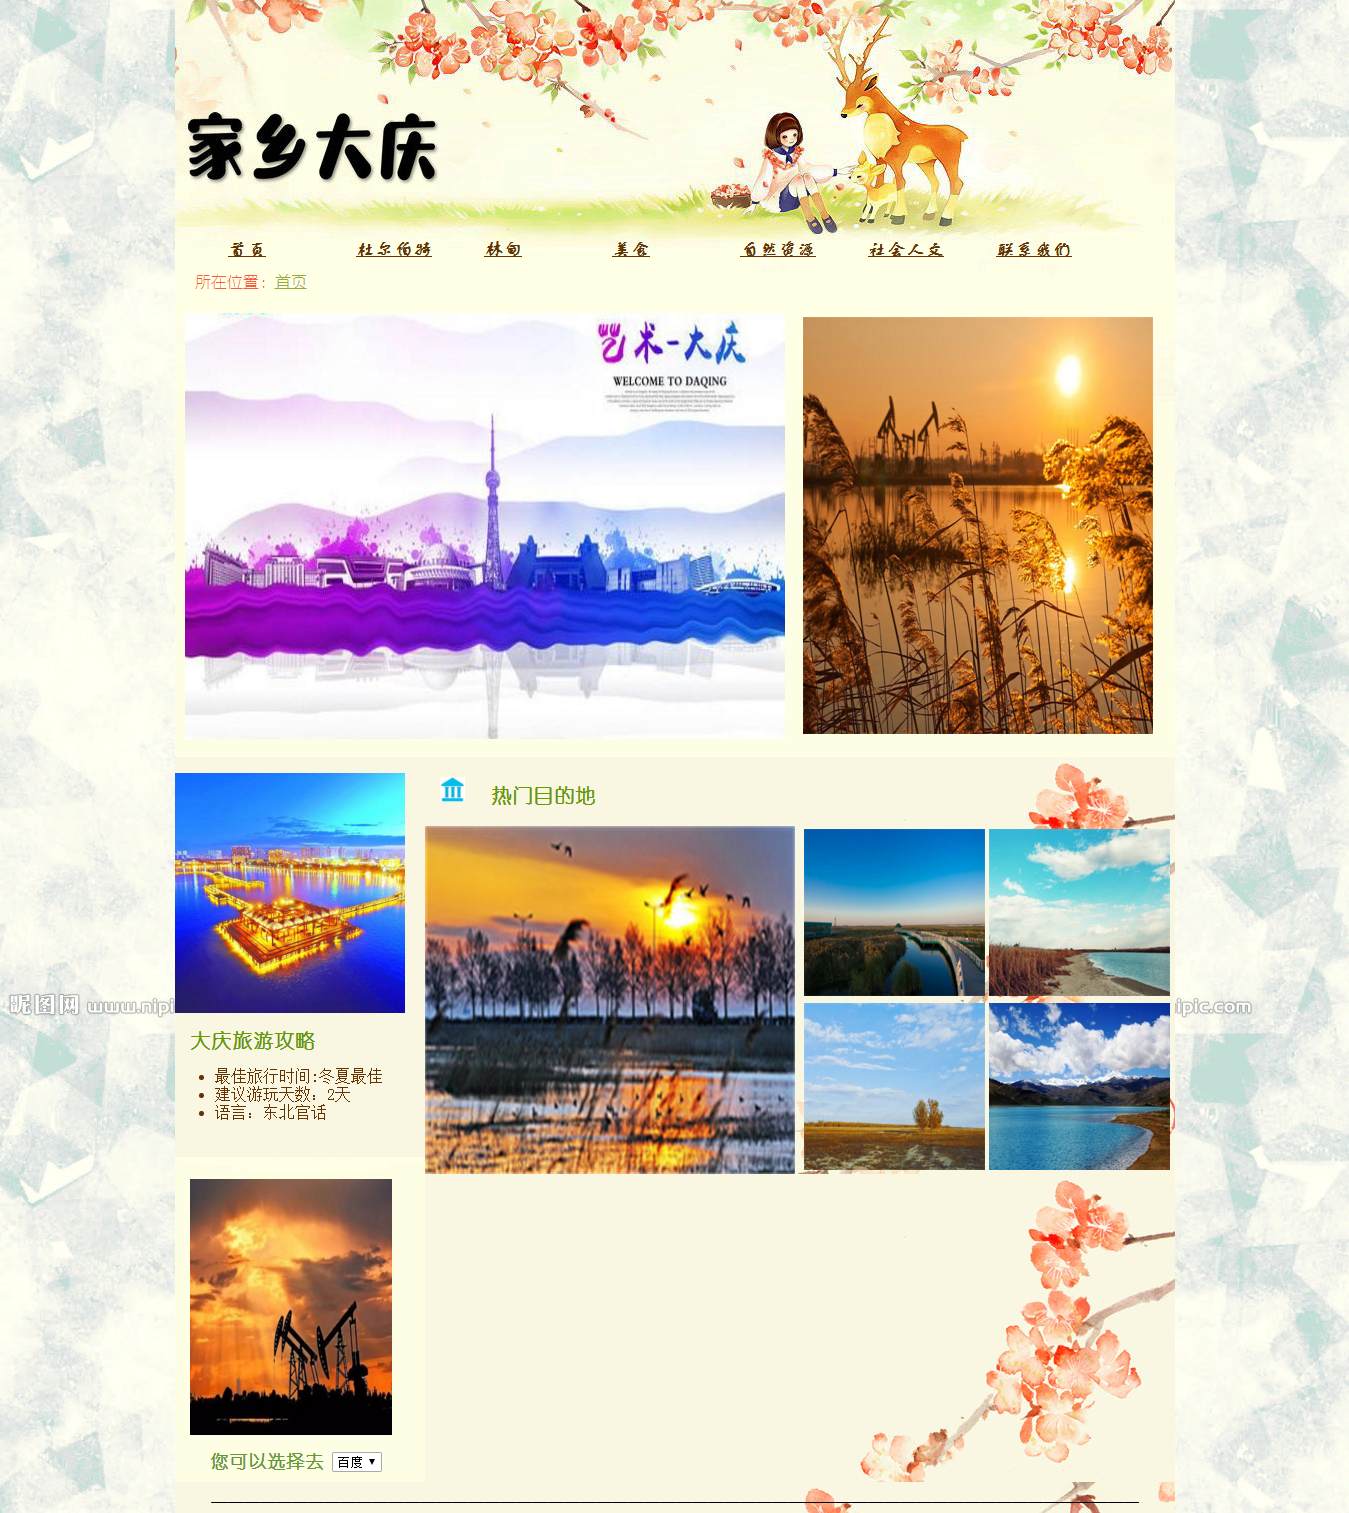 编号：697 大庆旅游网 7页 音乐 视频 留言表单 鼠标经过文字和图片特效 下拉选择框 CSS布局 50元